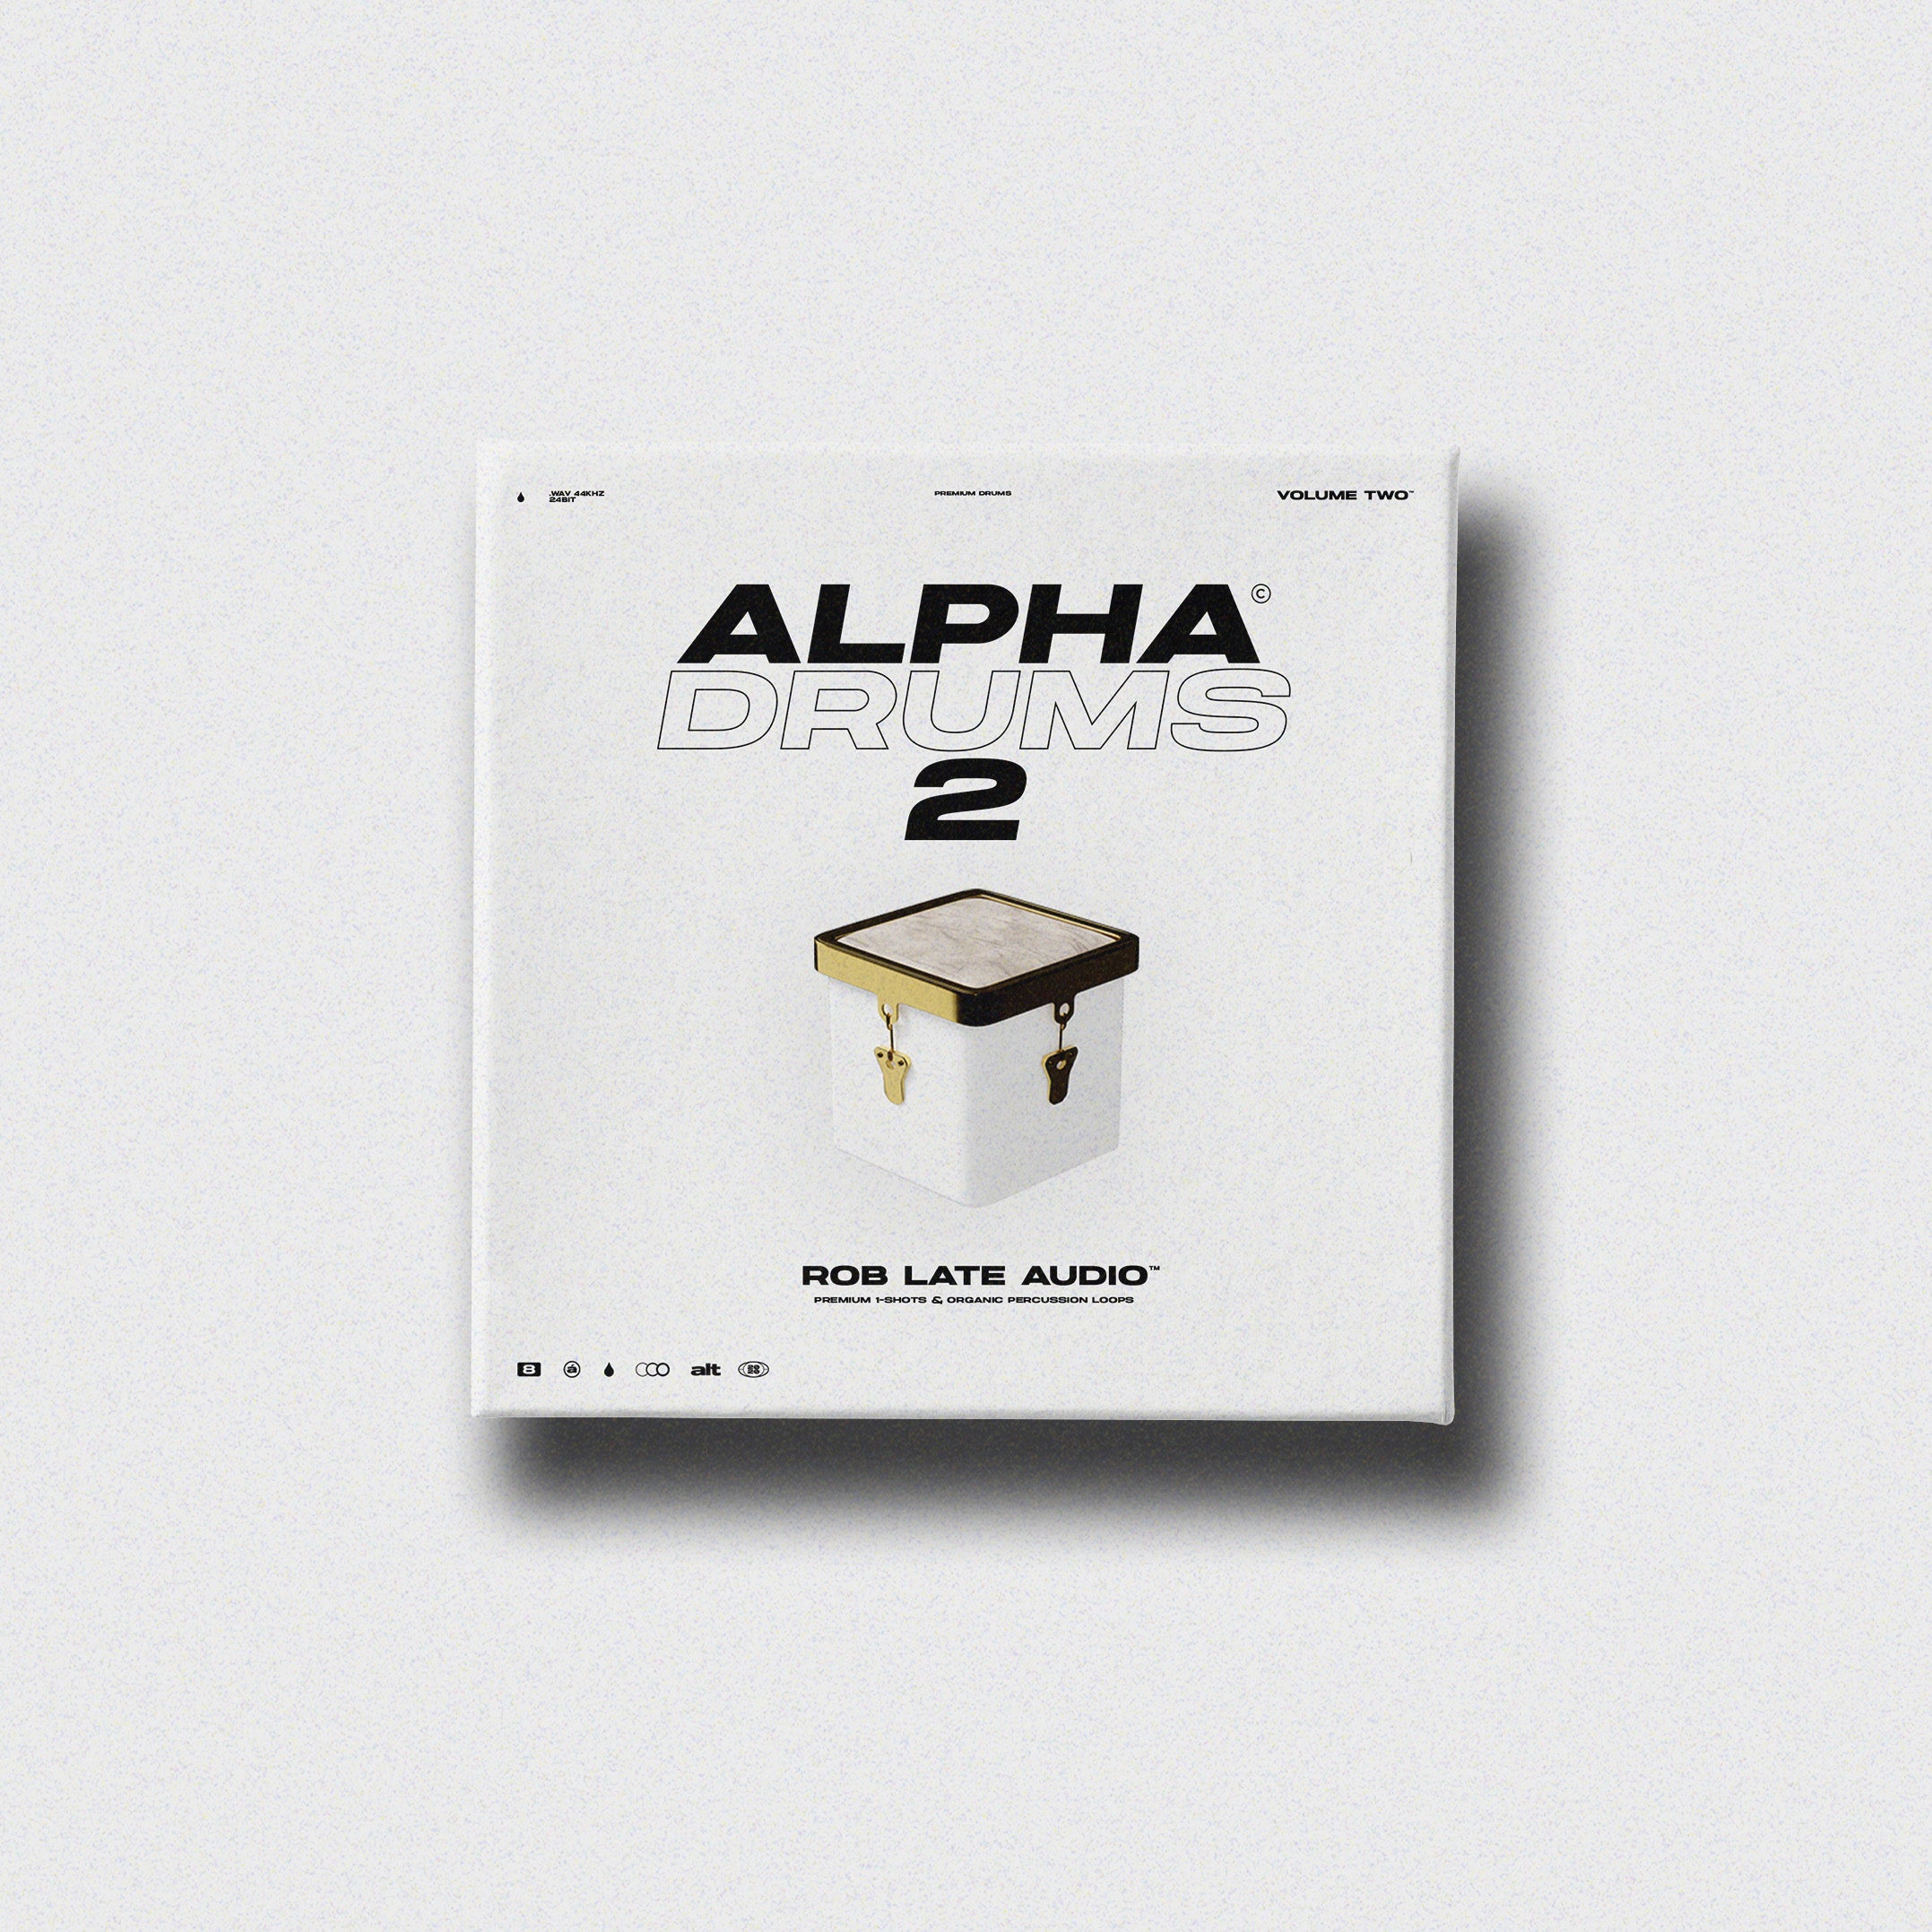 Alpha Drums 2 - Sample Pack